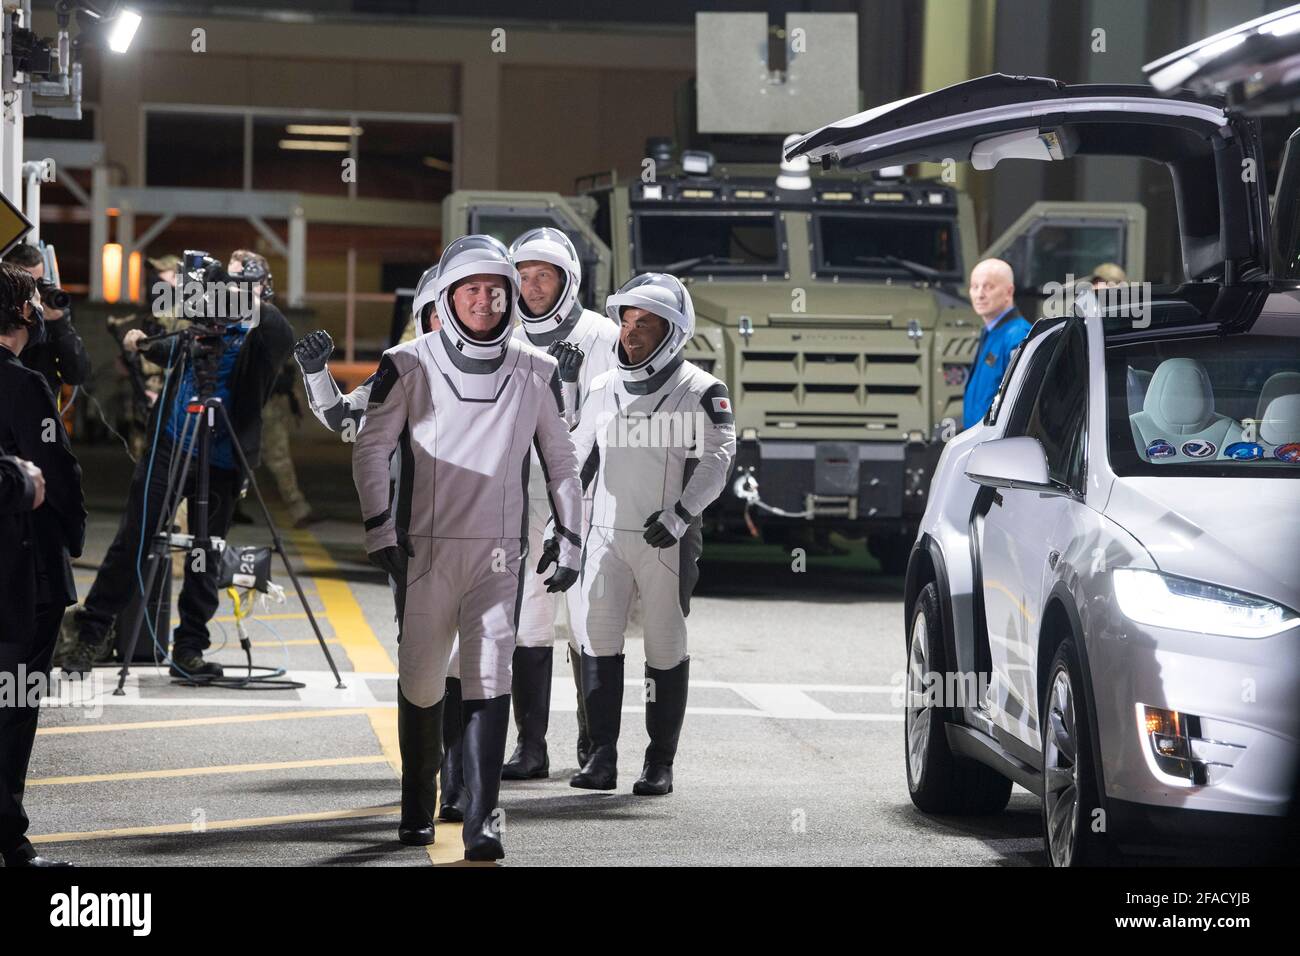 NASA-Astronauten Shane Kimbrough, Front, Astronaut Akihiko Hoshide, zweite, und ESA-Astronaut Thomas Pesquet, hinten, mit SpaceX-Raumanzügen, Werden gesehen, wie sie sich darauf vorbereiten, das Neil A. Armstrong Operations and Checkout Building für den Launch Complex 39A zu verlassen, um die Raumsonde SpaceX Crew Dragon für den Start der Crew-2-Mission am Freitag, den 23. April 2021, im Kennedy Space Center der NASA in Florida zu besteigen. Die NASA-Mission SpaceX Crew-2 ist die zweite Rundungsmission der Raumsonde SpaceX Crew Dragon und der Falcon 9-Rakete zum Internat Stockfoto